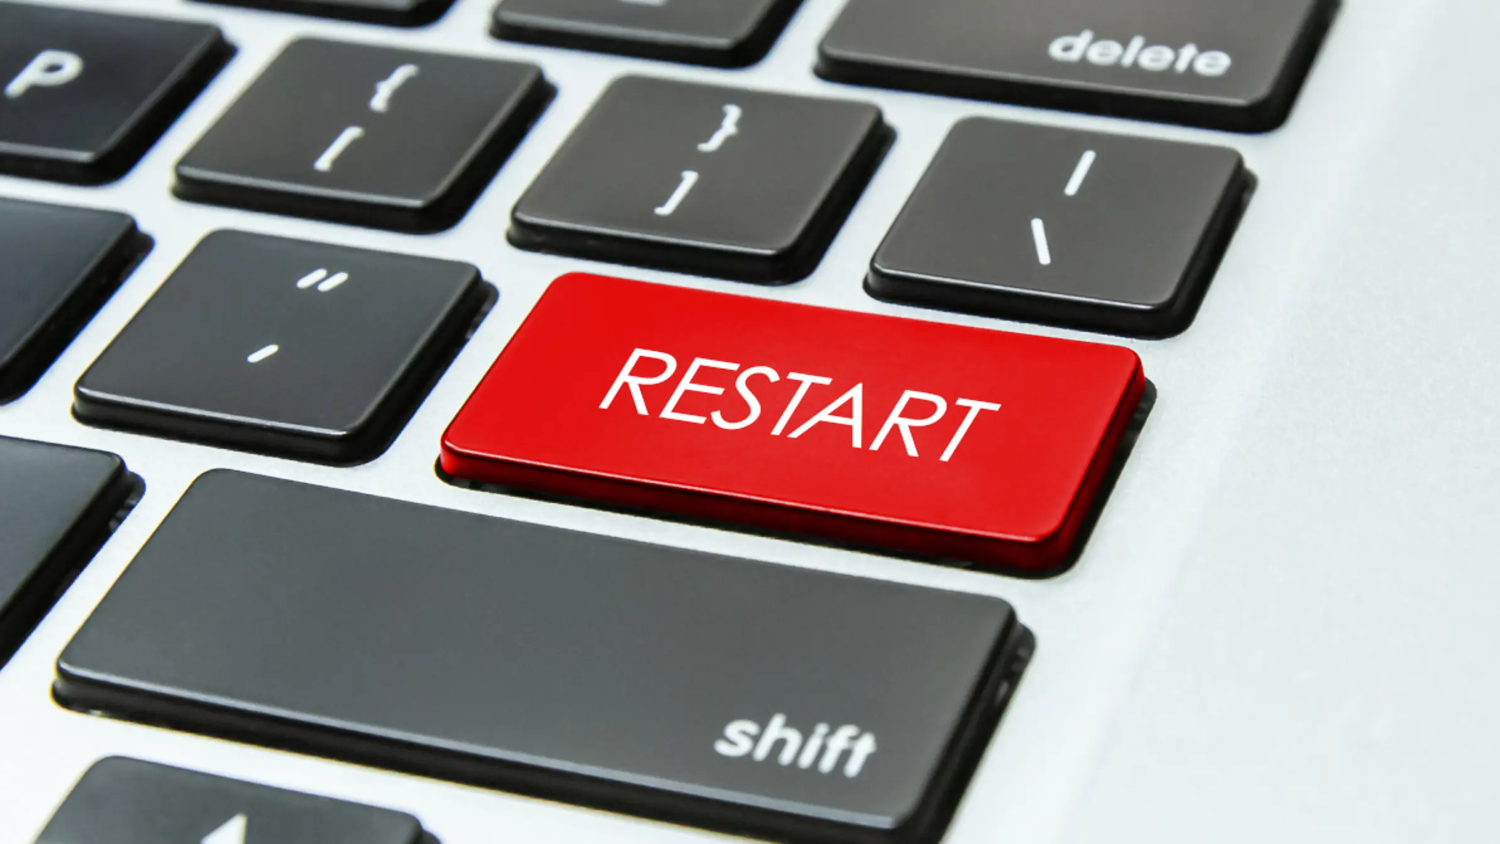 restart computer keyboard button